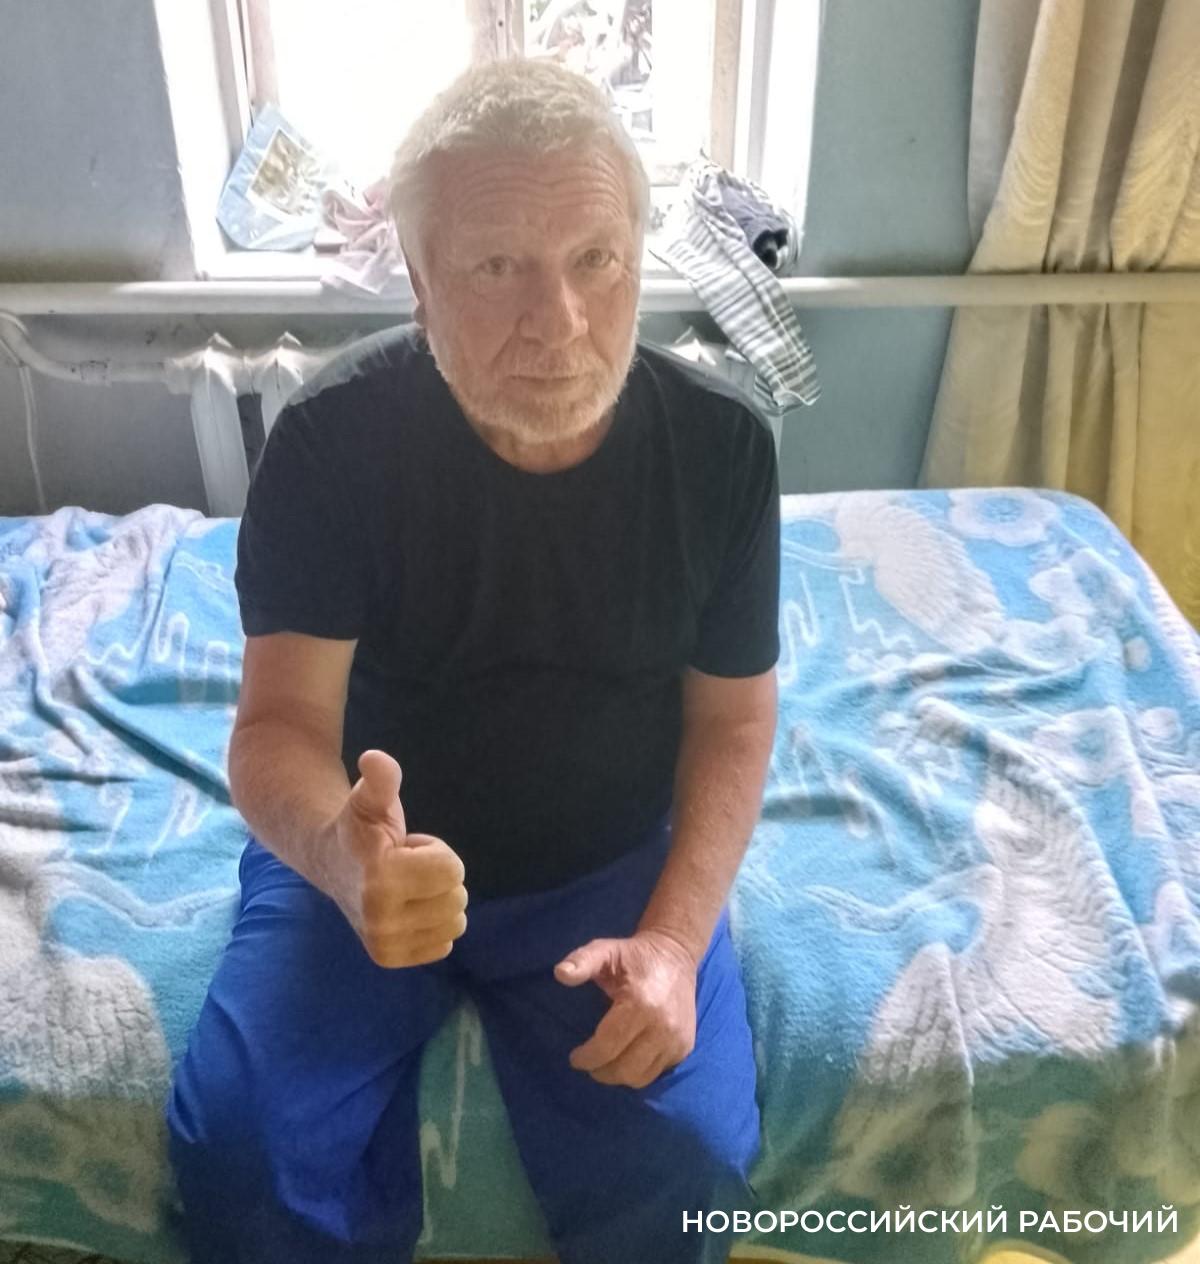 Пенсионер 2 года гнил на обочине промзоны Новороссийска. Продолжение истории о добрых людях